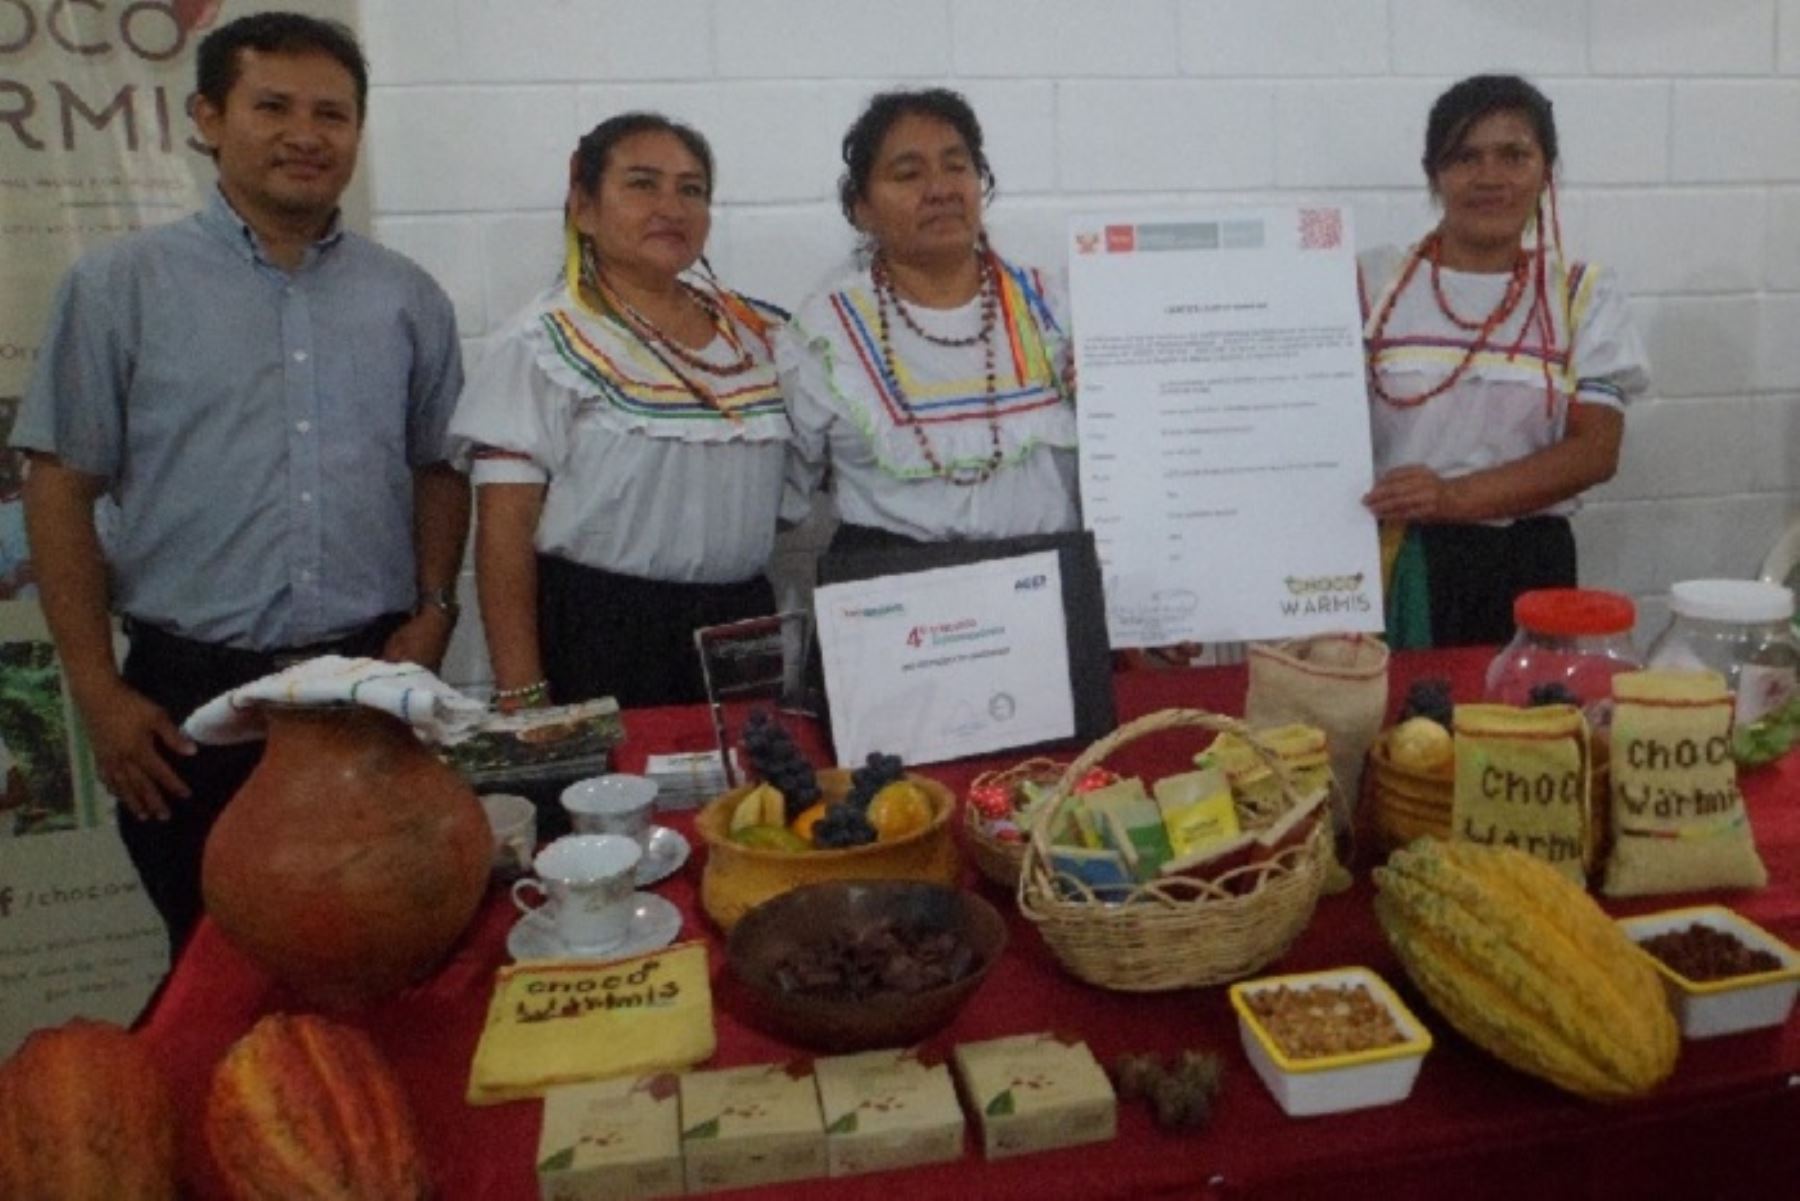 La Asociación de Mujeres Organizadas “Choco Warmis” de la comunidad nativa Copal Sacha, en la provincia El Dorado, región San Martín, recibió del Instituto Nacional de Defensa de la Competencia y de la Protección de la Propiedad Intelectual (Indecopi) el certificado de la marca colectiva.